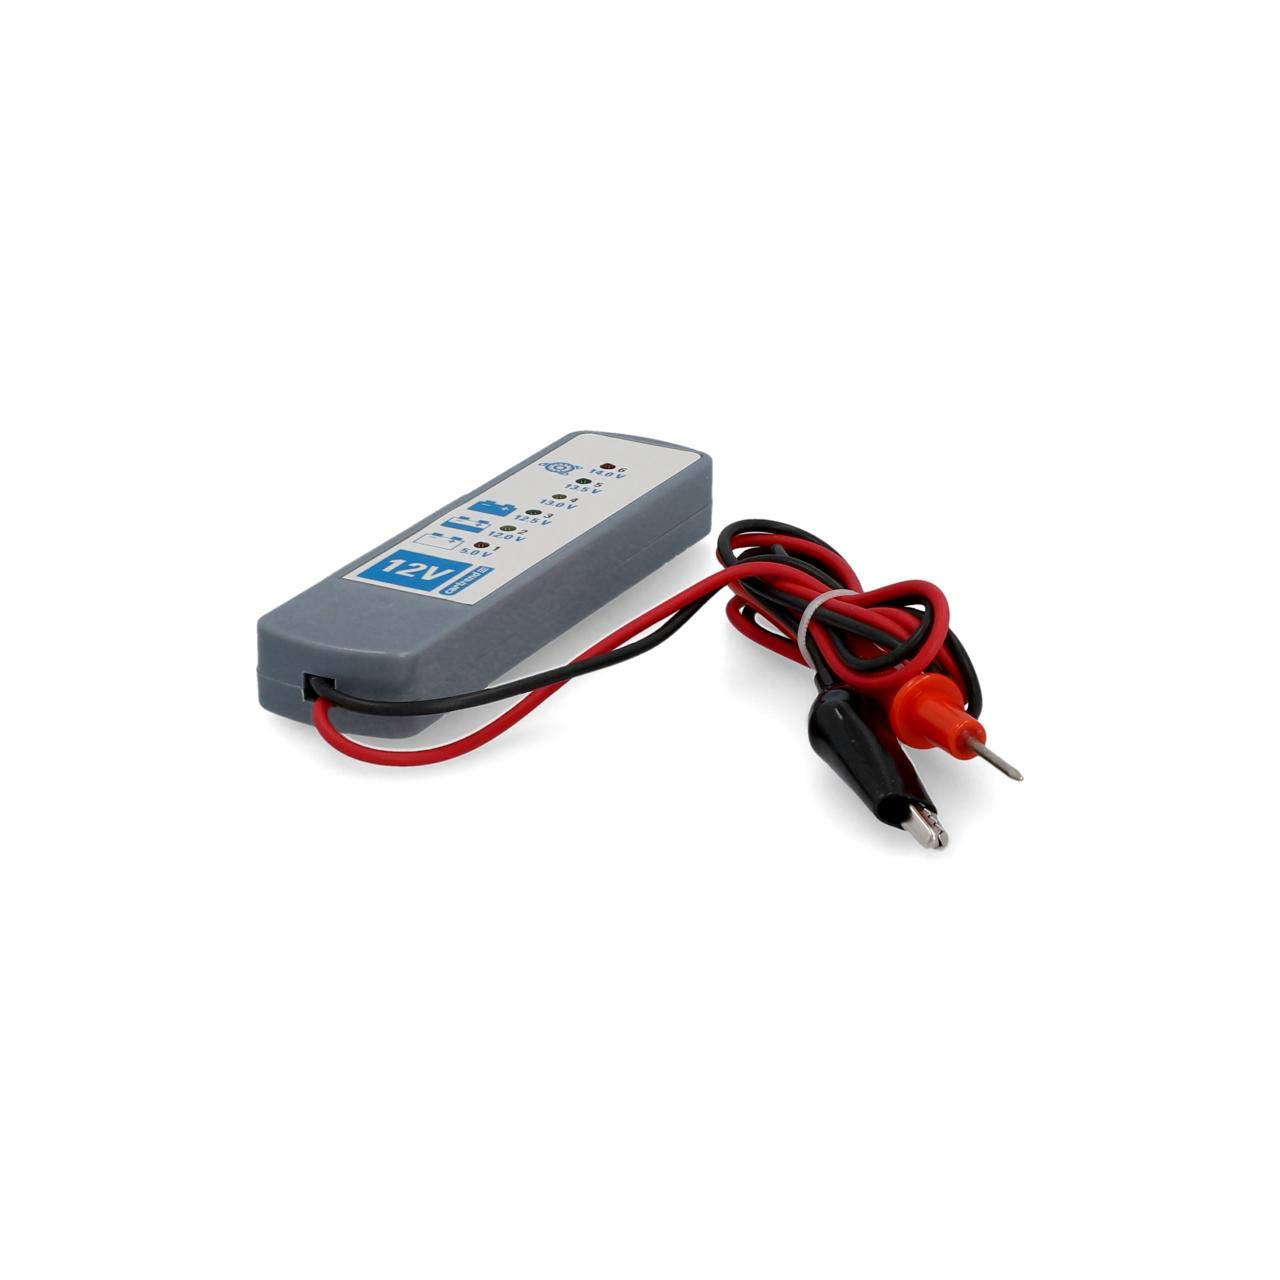 CARTREND Auto Batterietester 6/12V Diagnosetester,Batterieprüfer,Testgerät zur Überprüfung von Ladezustand,Batterie-Belastbarkeit von cartrend